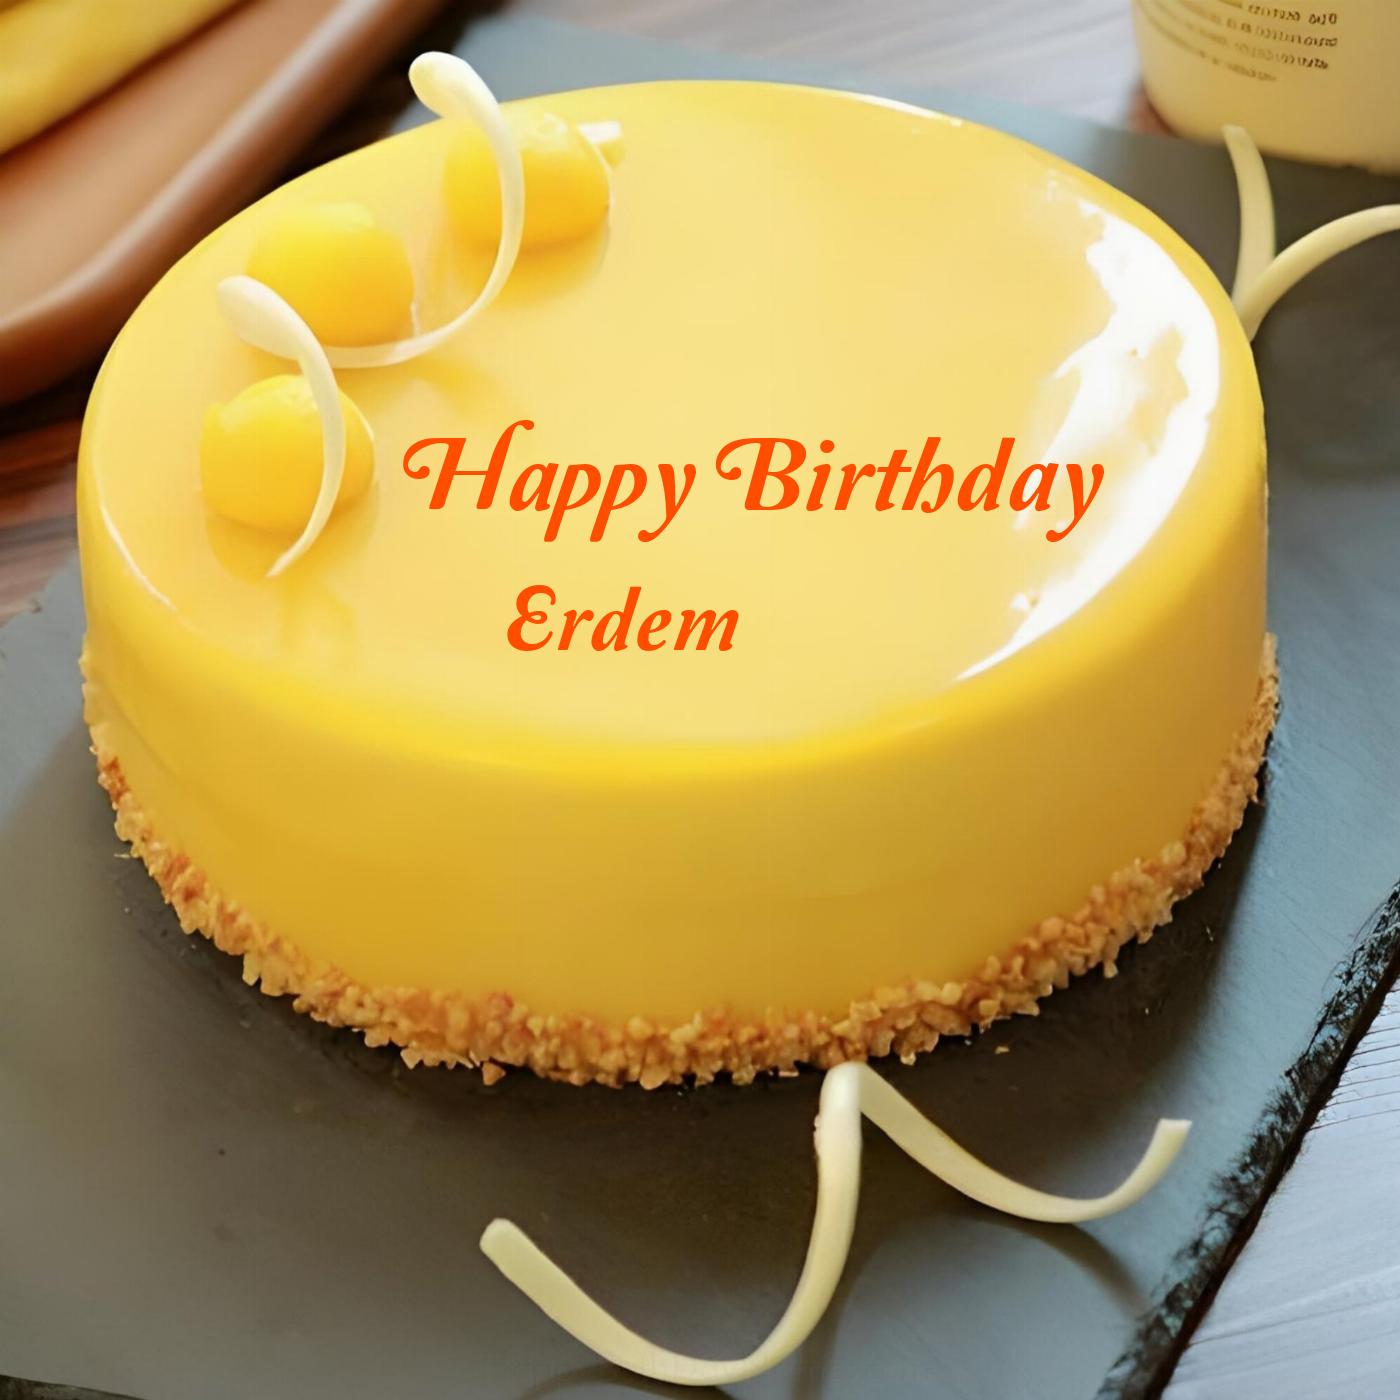 Happy Birthday Erdem Beautiful Yellow Cake